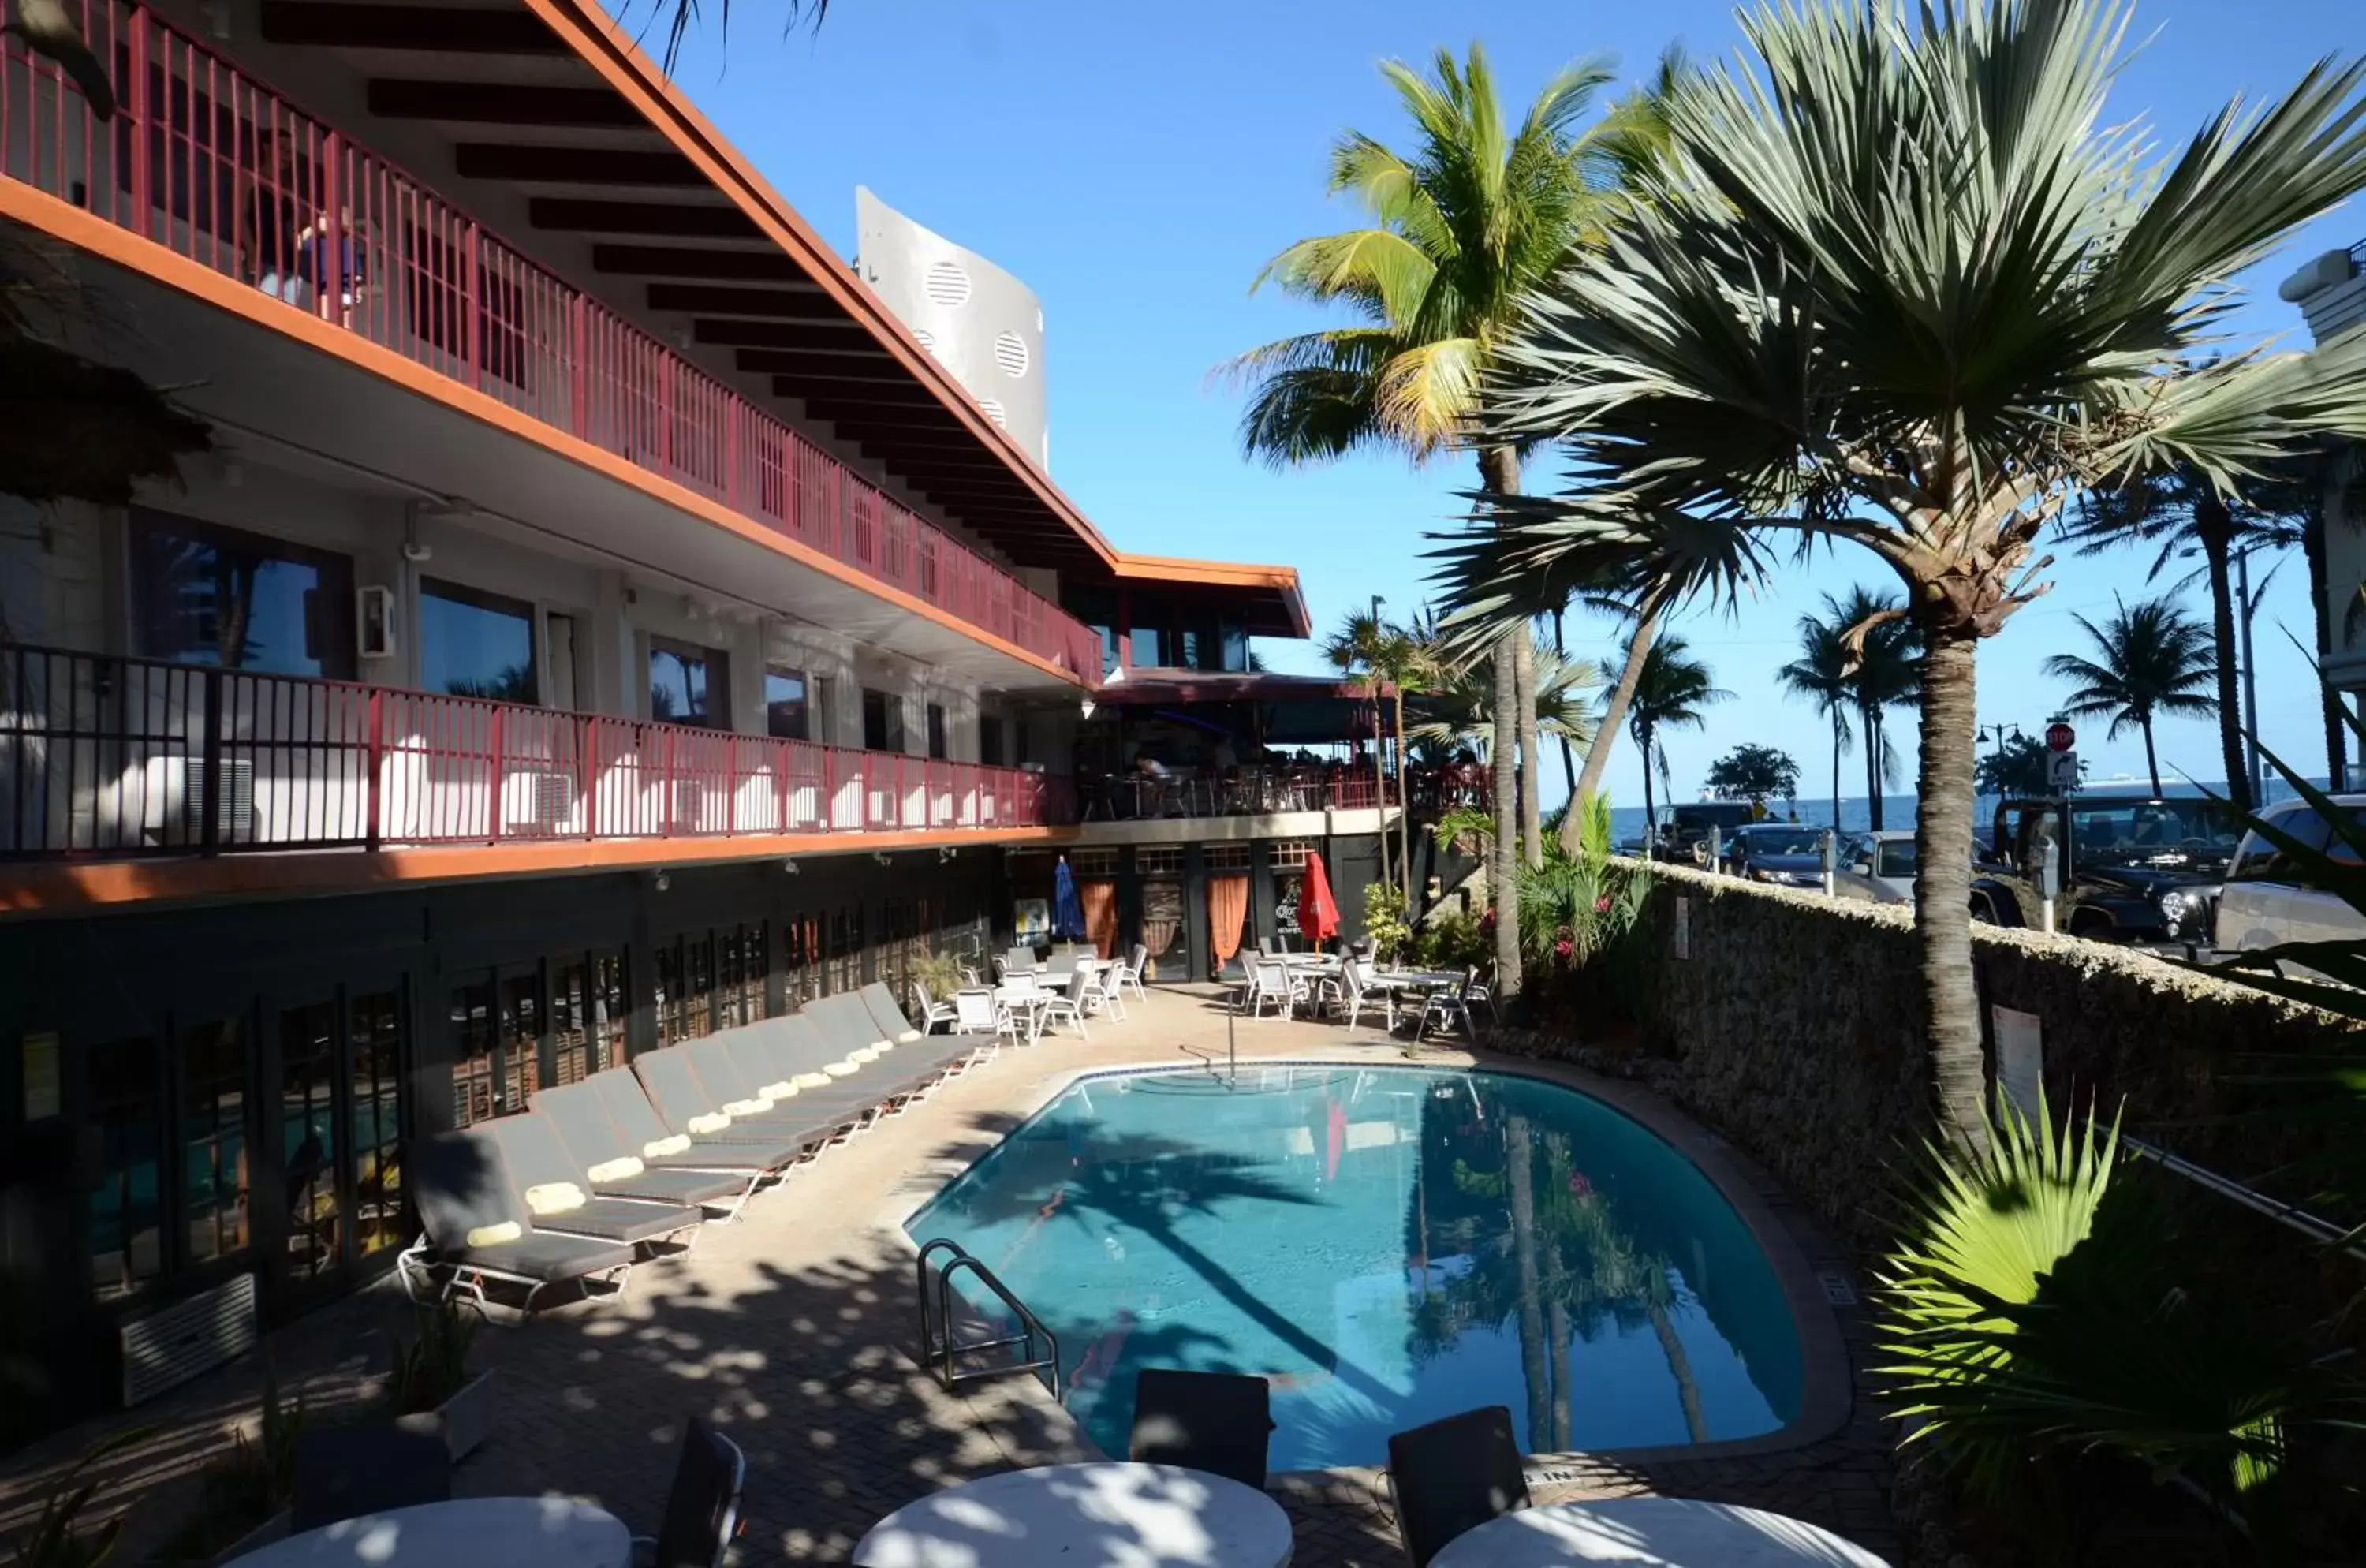 Swimming pool in Sea Club Ocean Resort